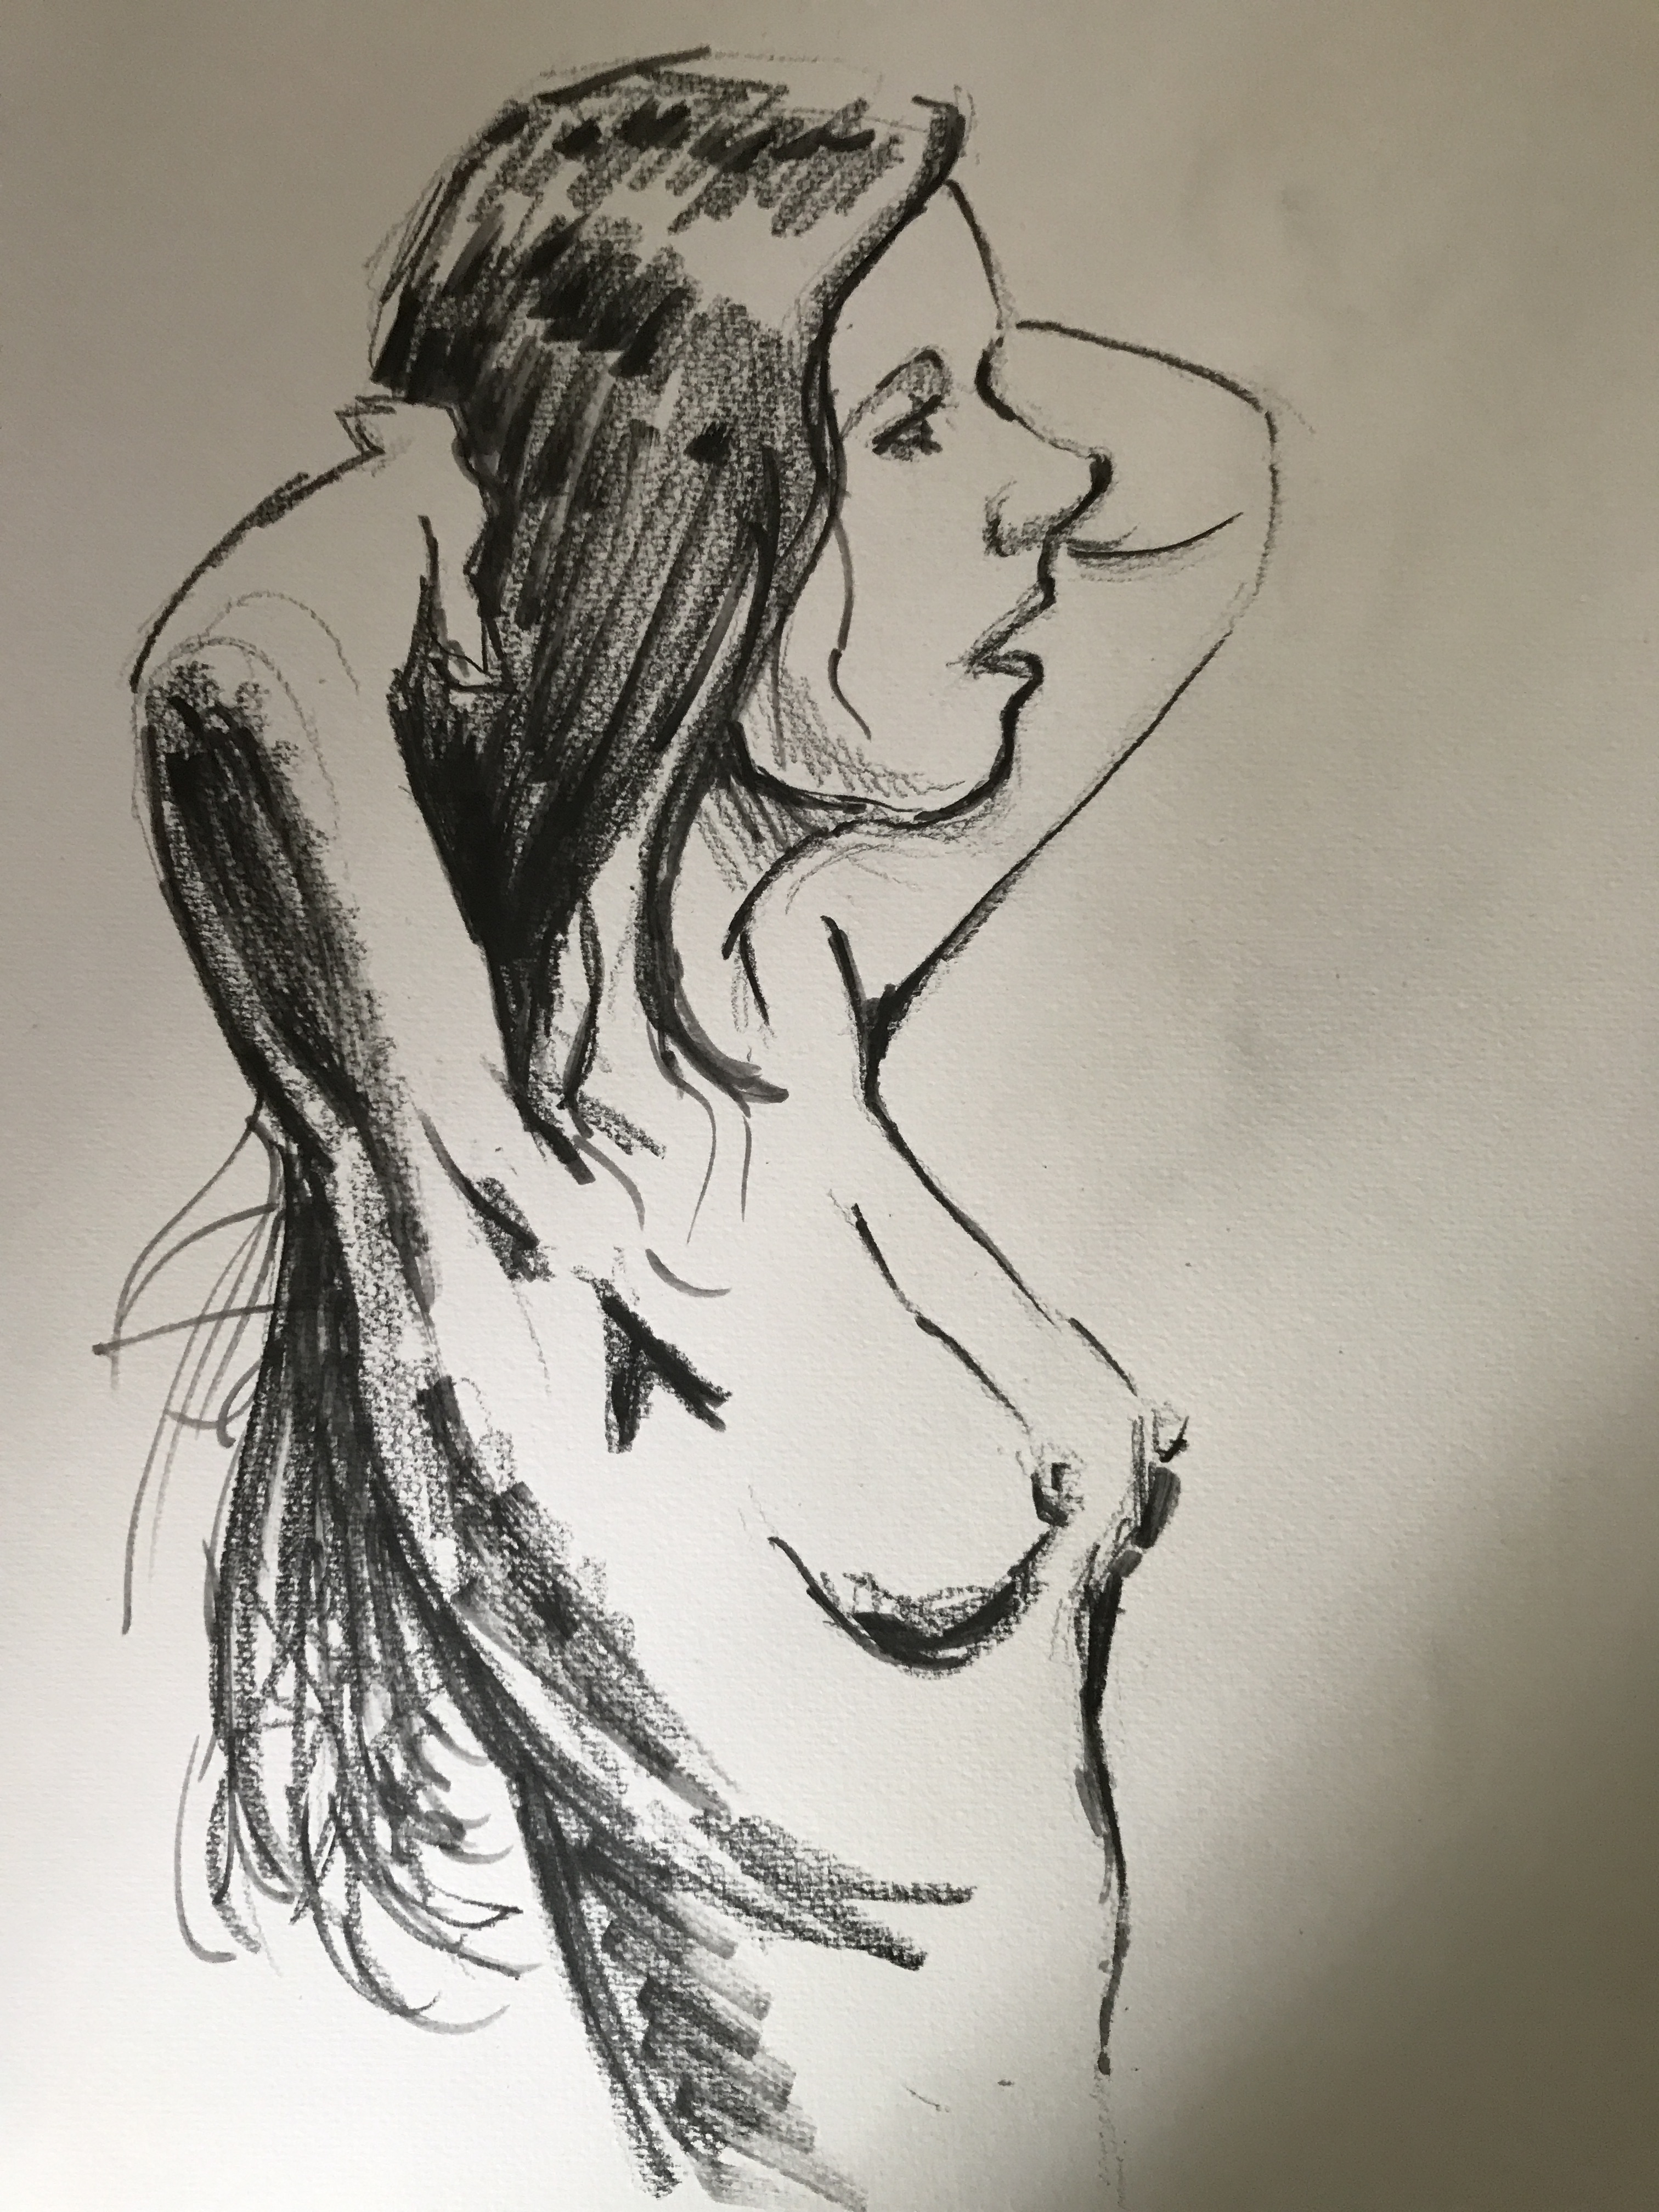  Dessin portrait profil buste femme graphite  cours de dessin 